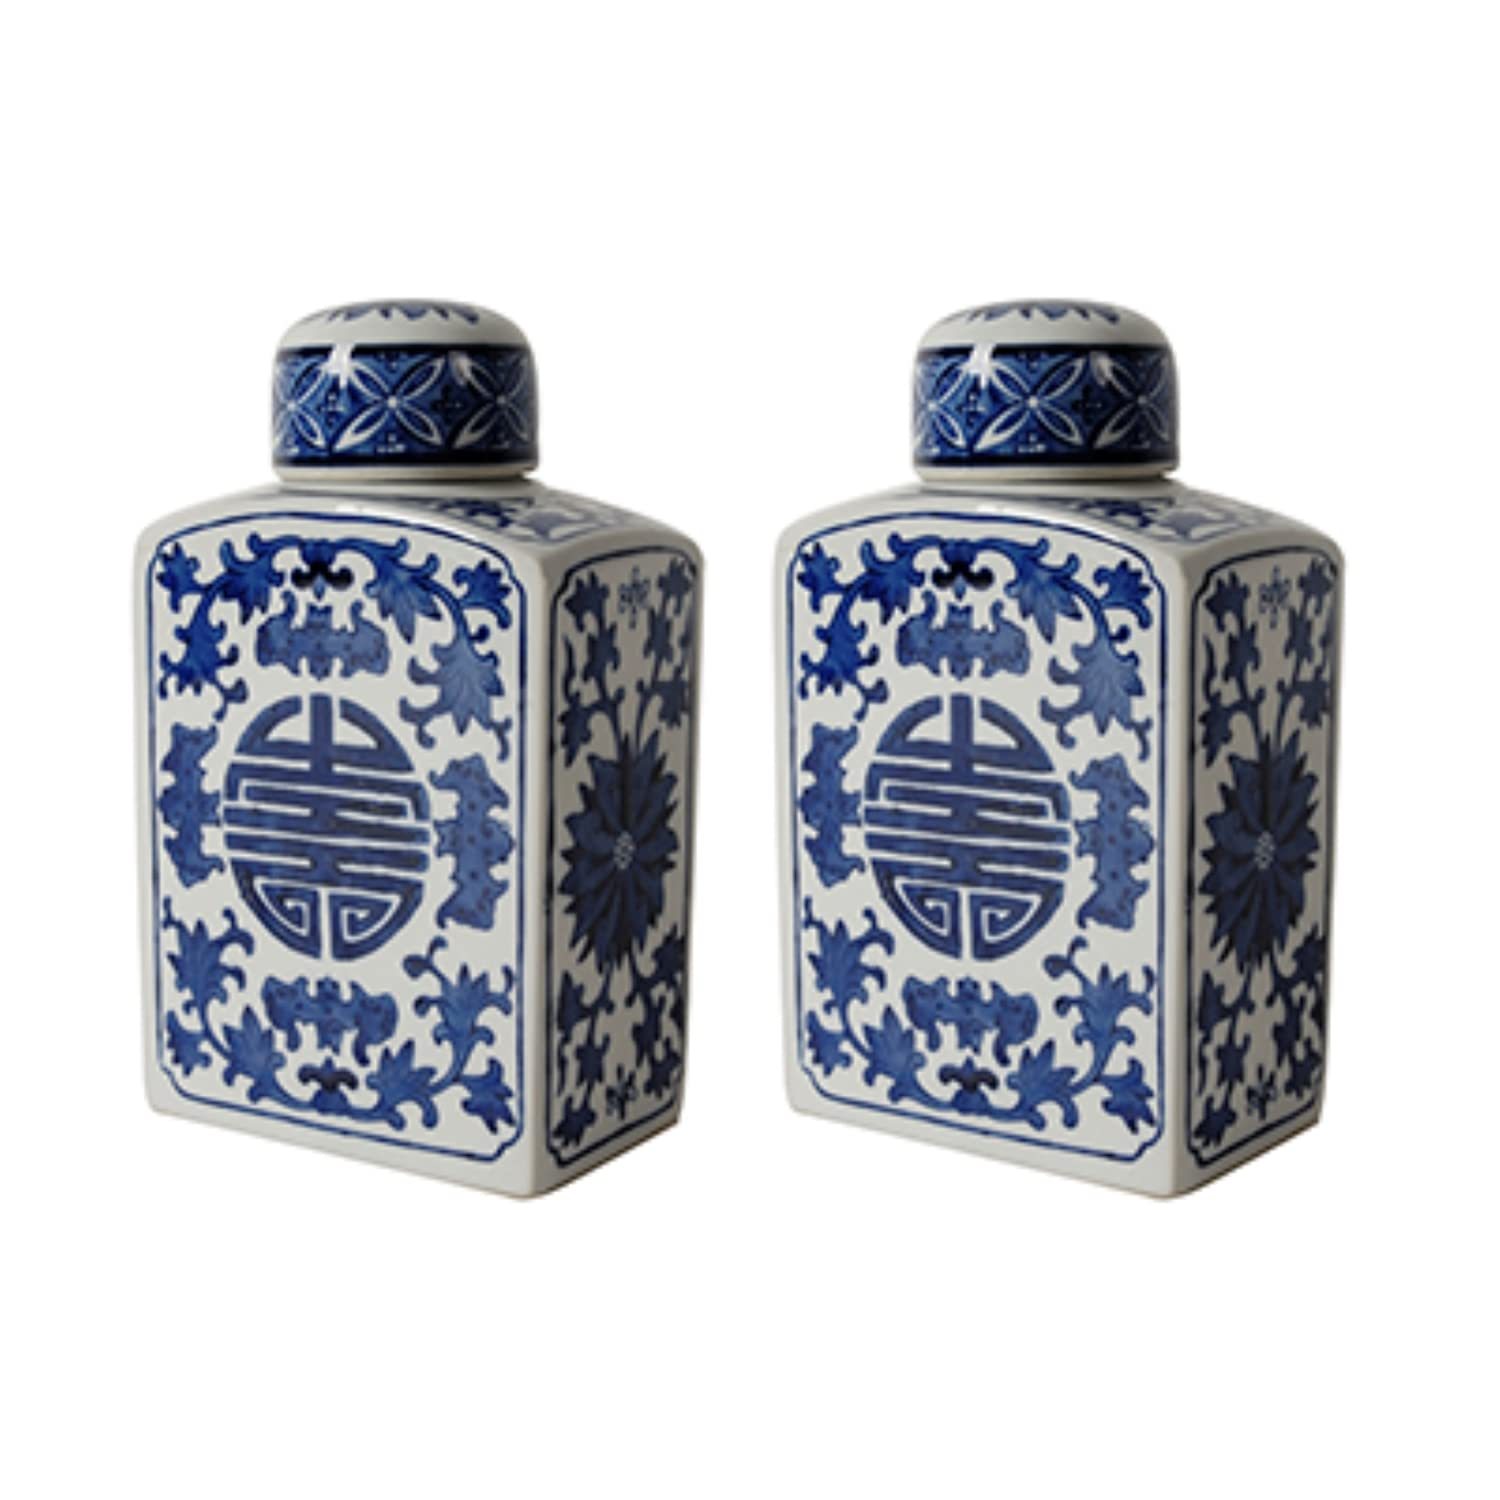 A&B Home Ren Rectangular Blue-White Lidded Jar - Set of 2-5.5" x 3.5" x 8.5" - B - $59.40